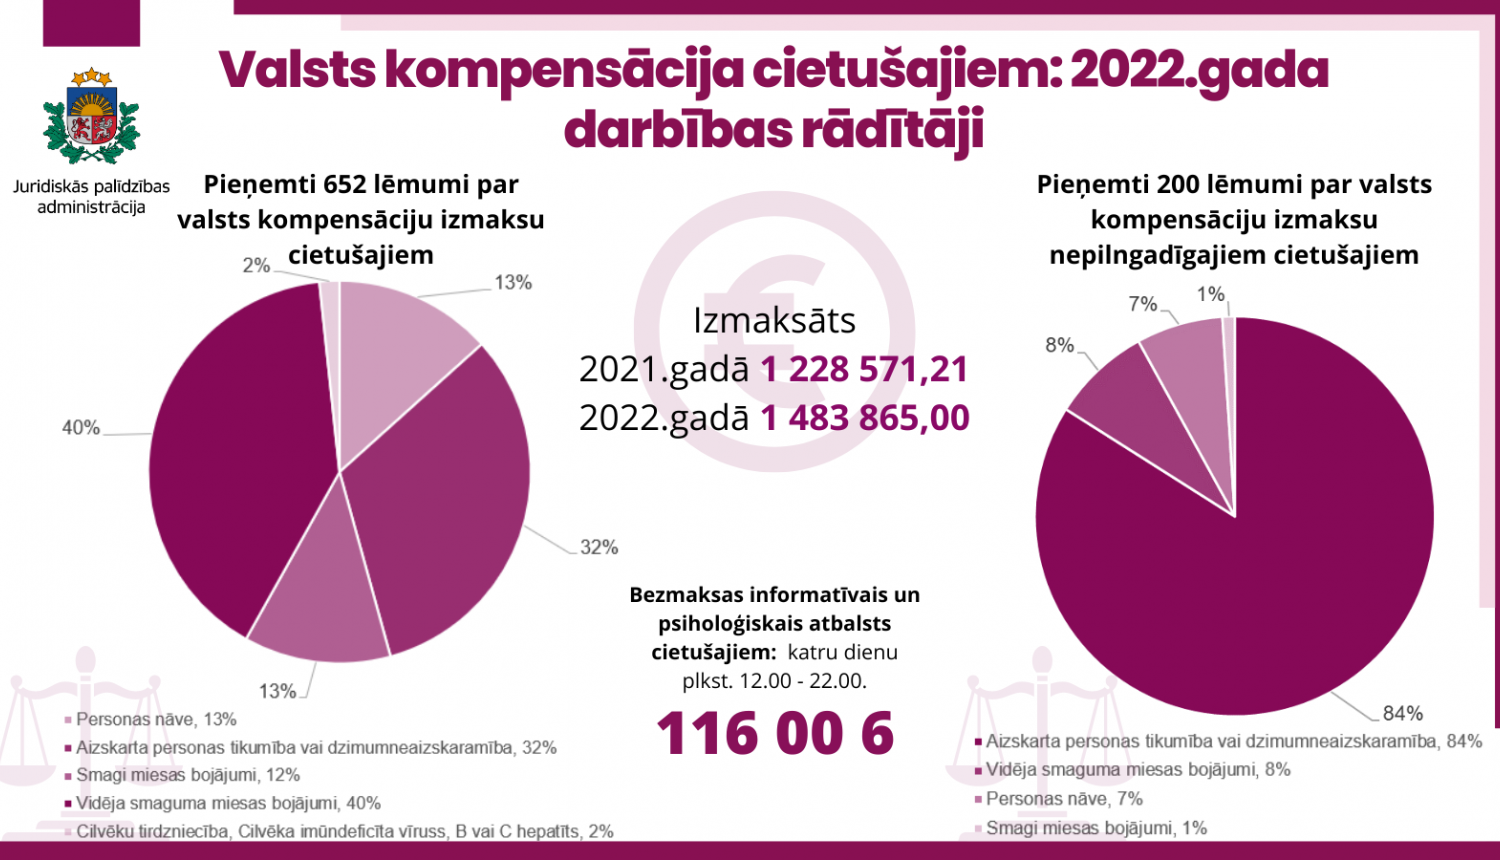 Valsts kompensācija cietušajiem 2022.gada darbības rādītāji